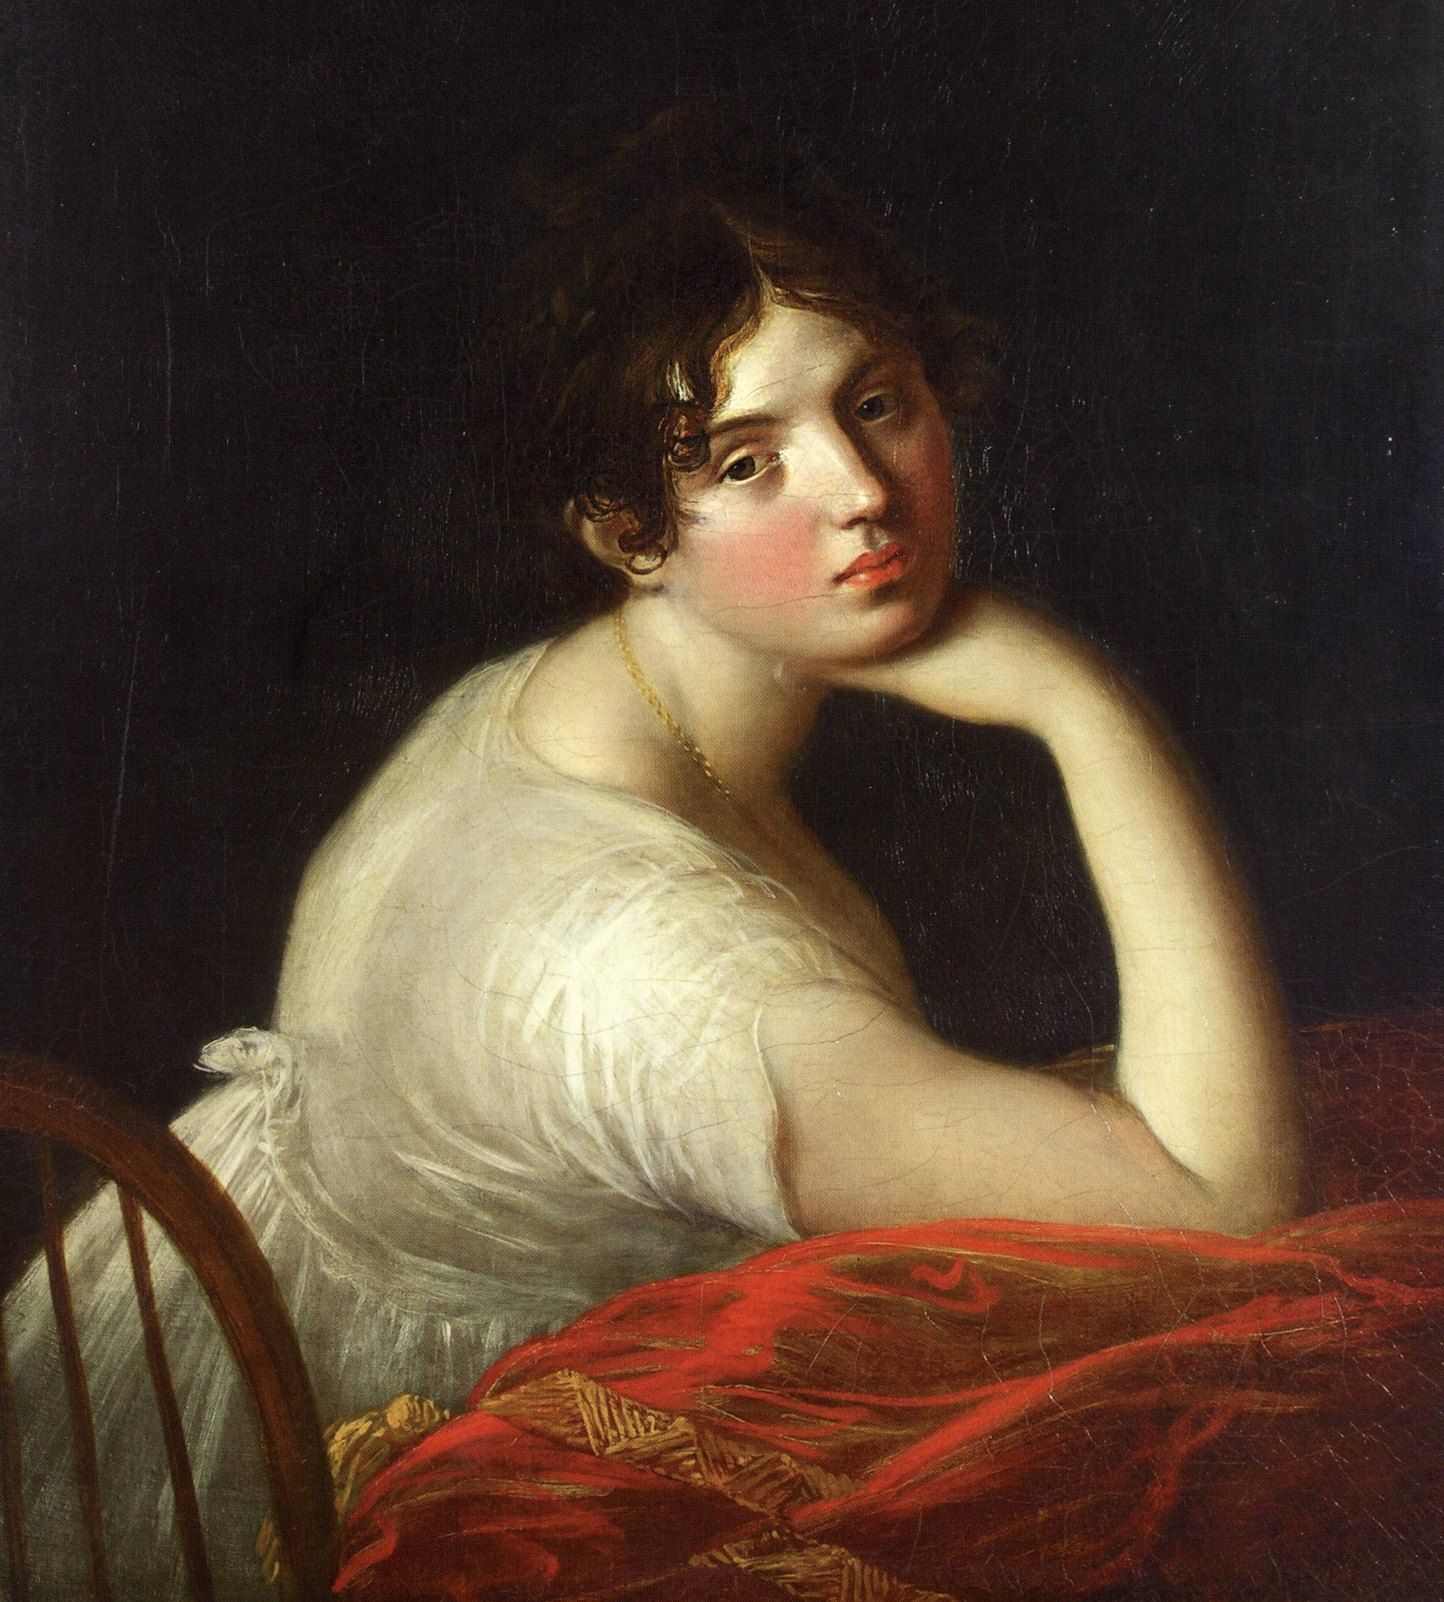 Kobieta, która sprawiała, że car zapominał o przepięknej żonie. Maria Czetwertyńska na obrazie Salvatore Tonci (źródło: domena publiczna).